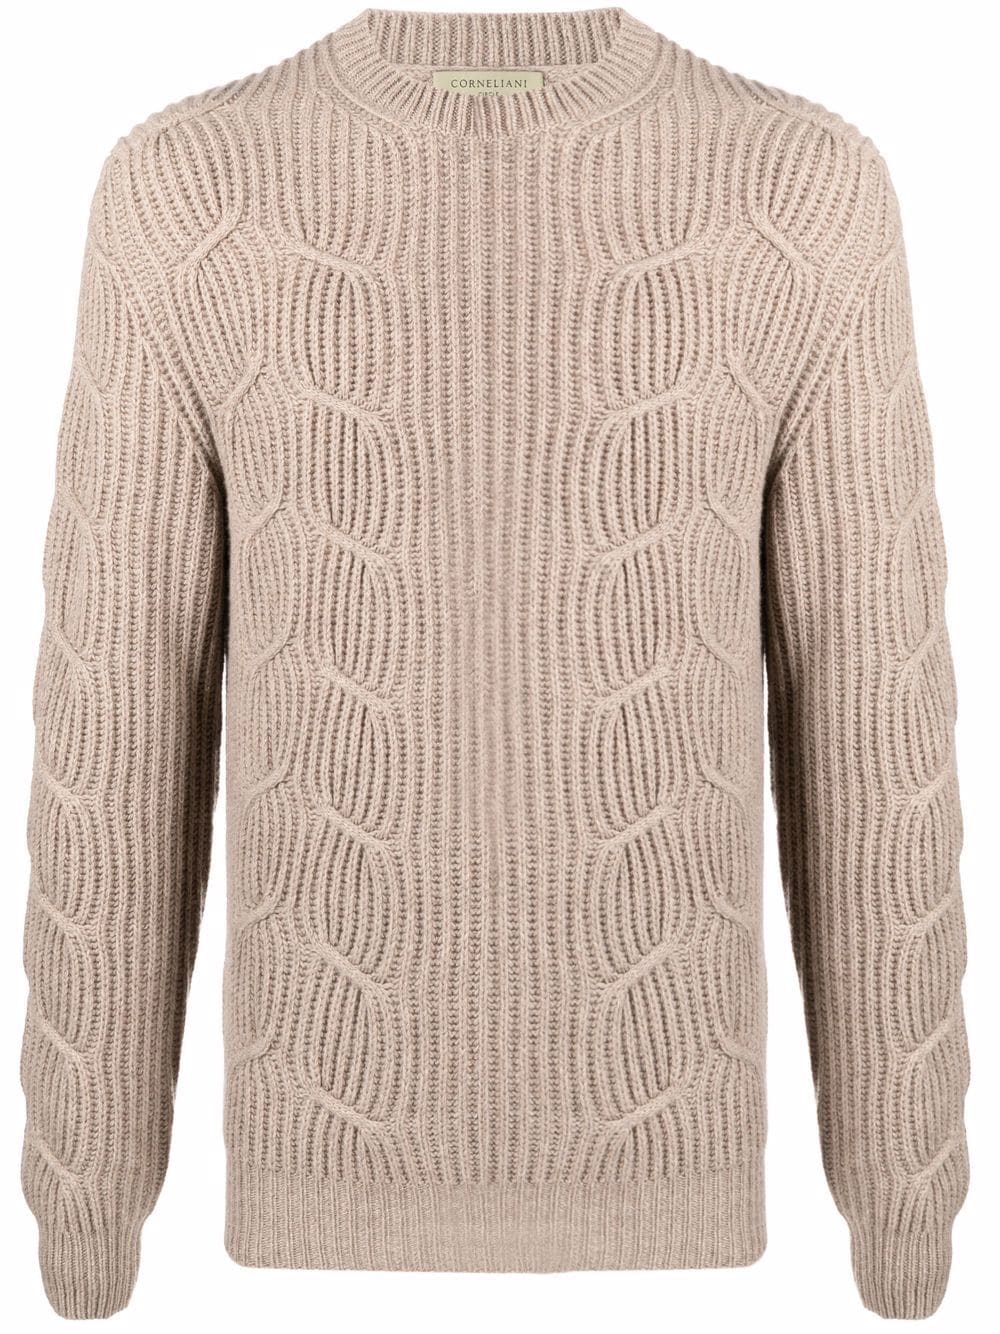 фото Corneliani свитер фактурной вязки с круглым вырезом